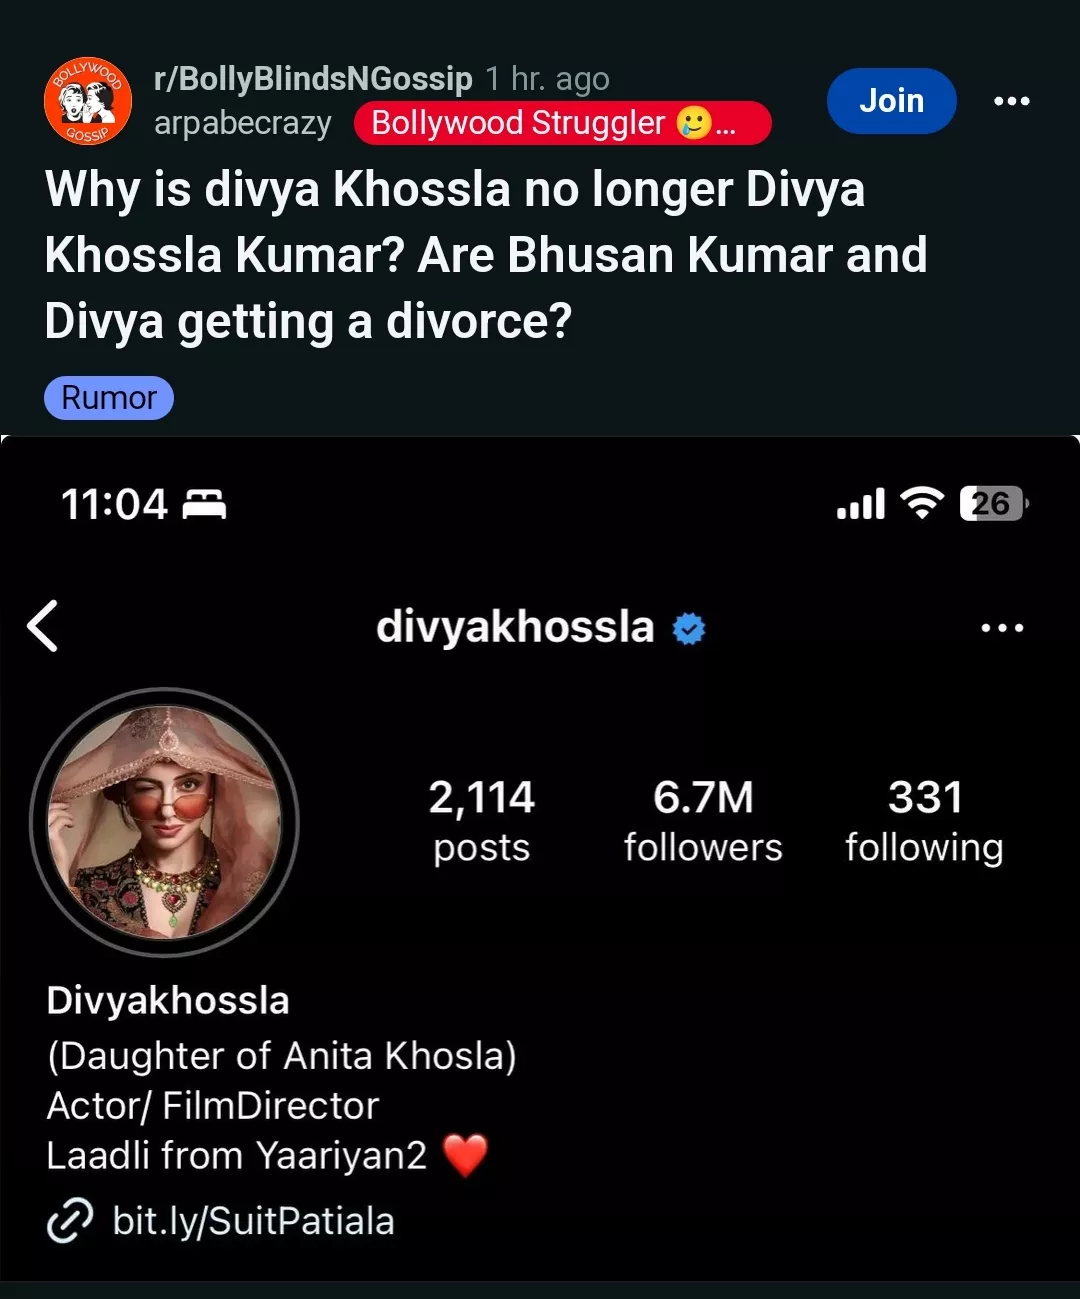 Divya Khosla